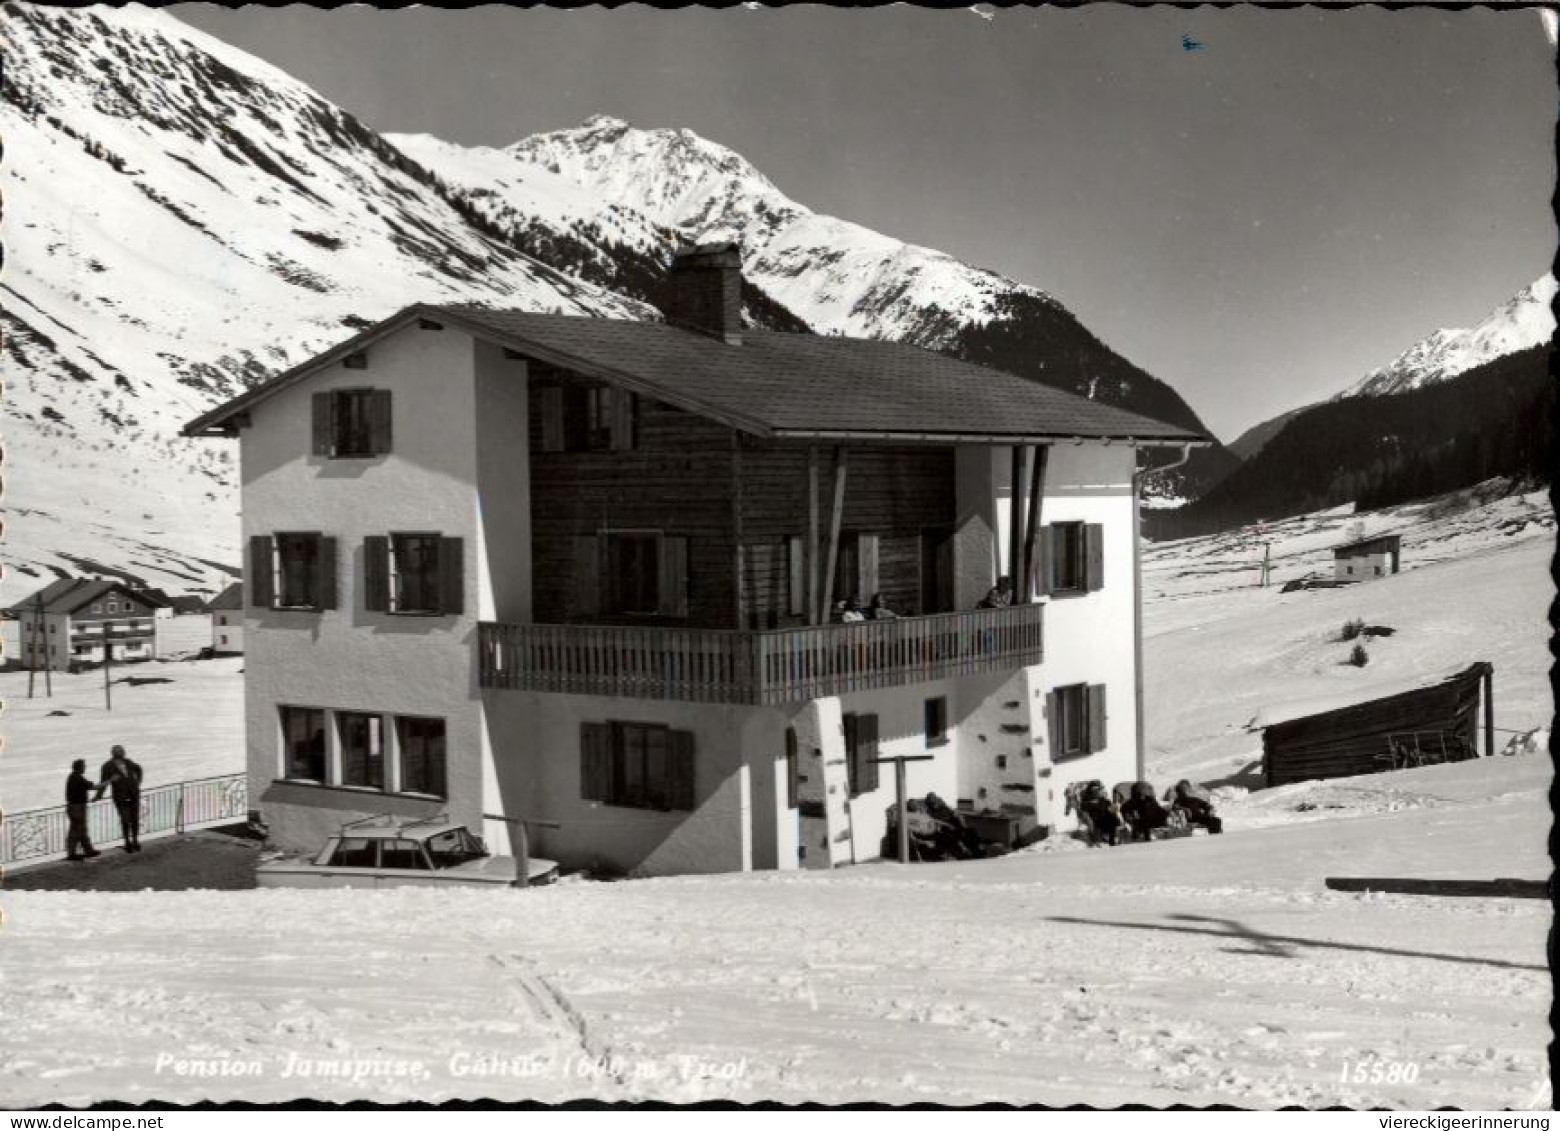 ! S/w Ansichtskarte Galtür In Tirol, Pension Jamspitze, 1965, Österreich, Schnee - Galtür